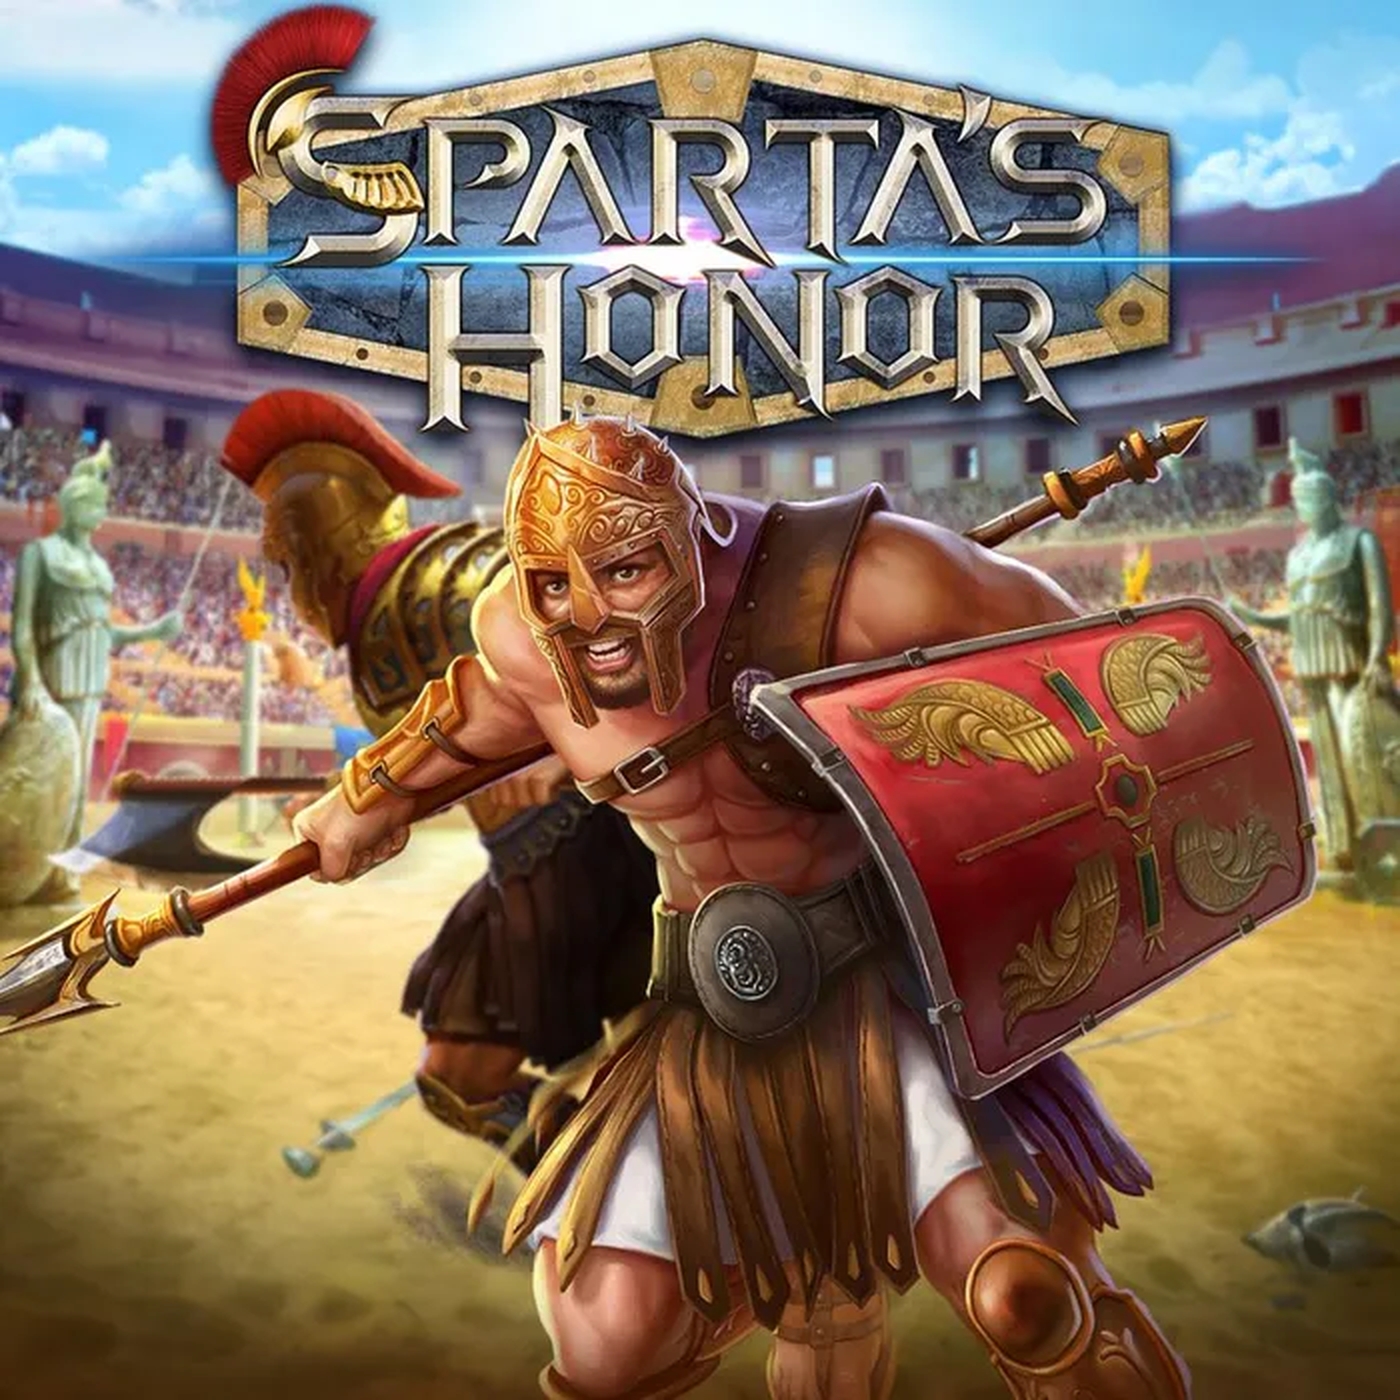 Sparta's Honor demo